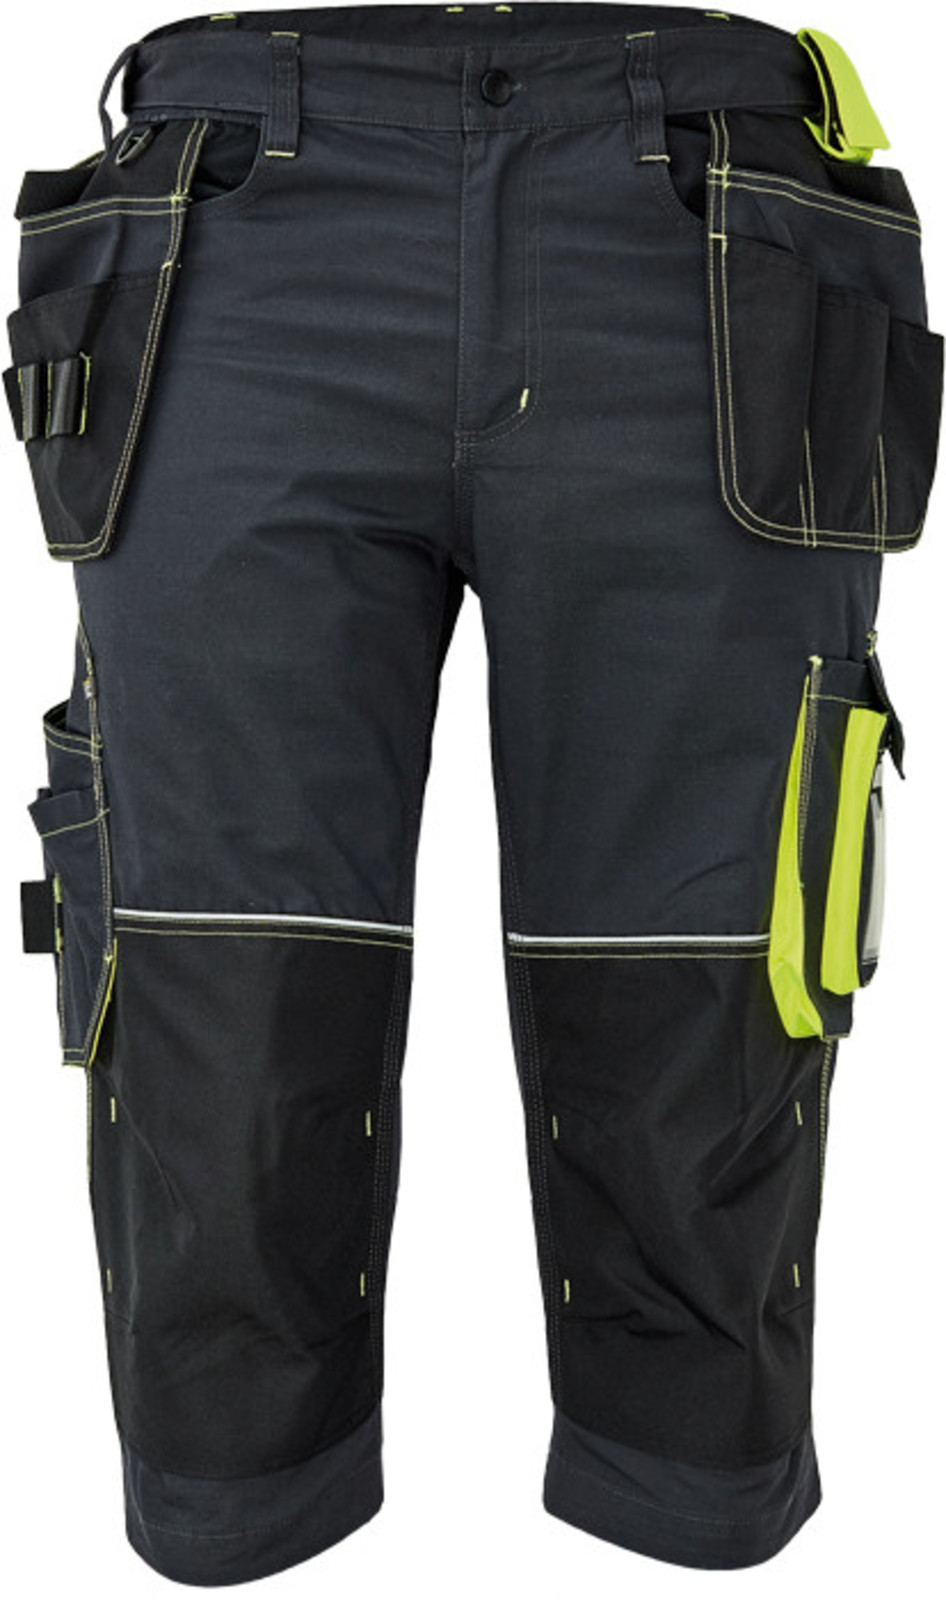 Pánske pracovné 3/4 nohavice Cerva Knoxfield 320 - veľkosť: 62, farba: antracit/žltá